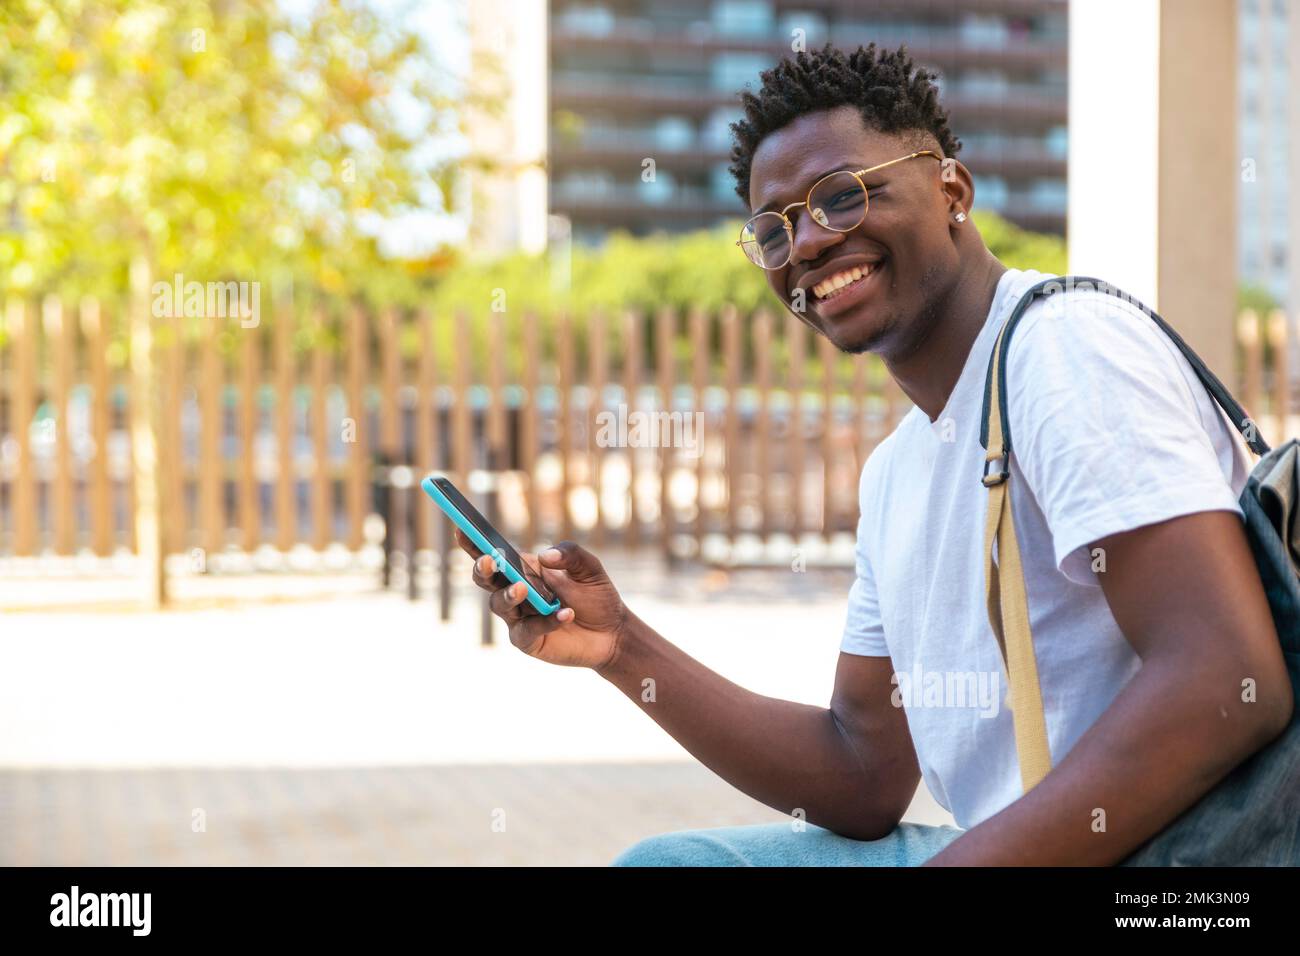 Ritratto di giovane studente seduto nel parco, utilizzando il suo telefono cellulare e guardando la fotocamera - sorriso uomo felice - concetto di istruzione Foto Stock